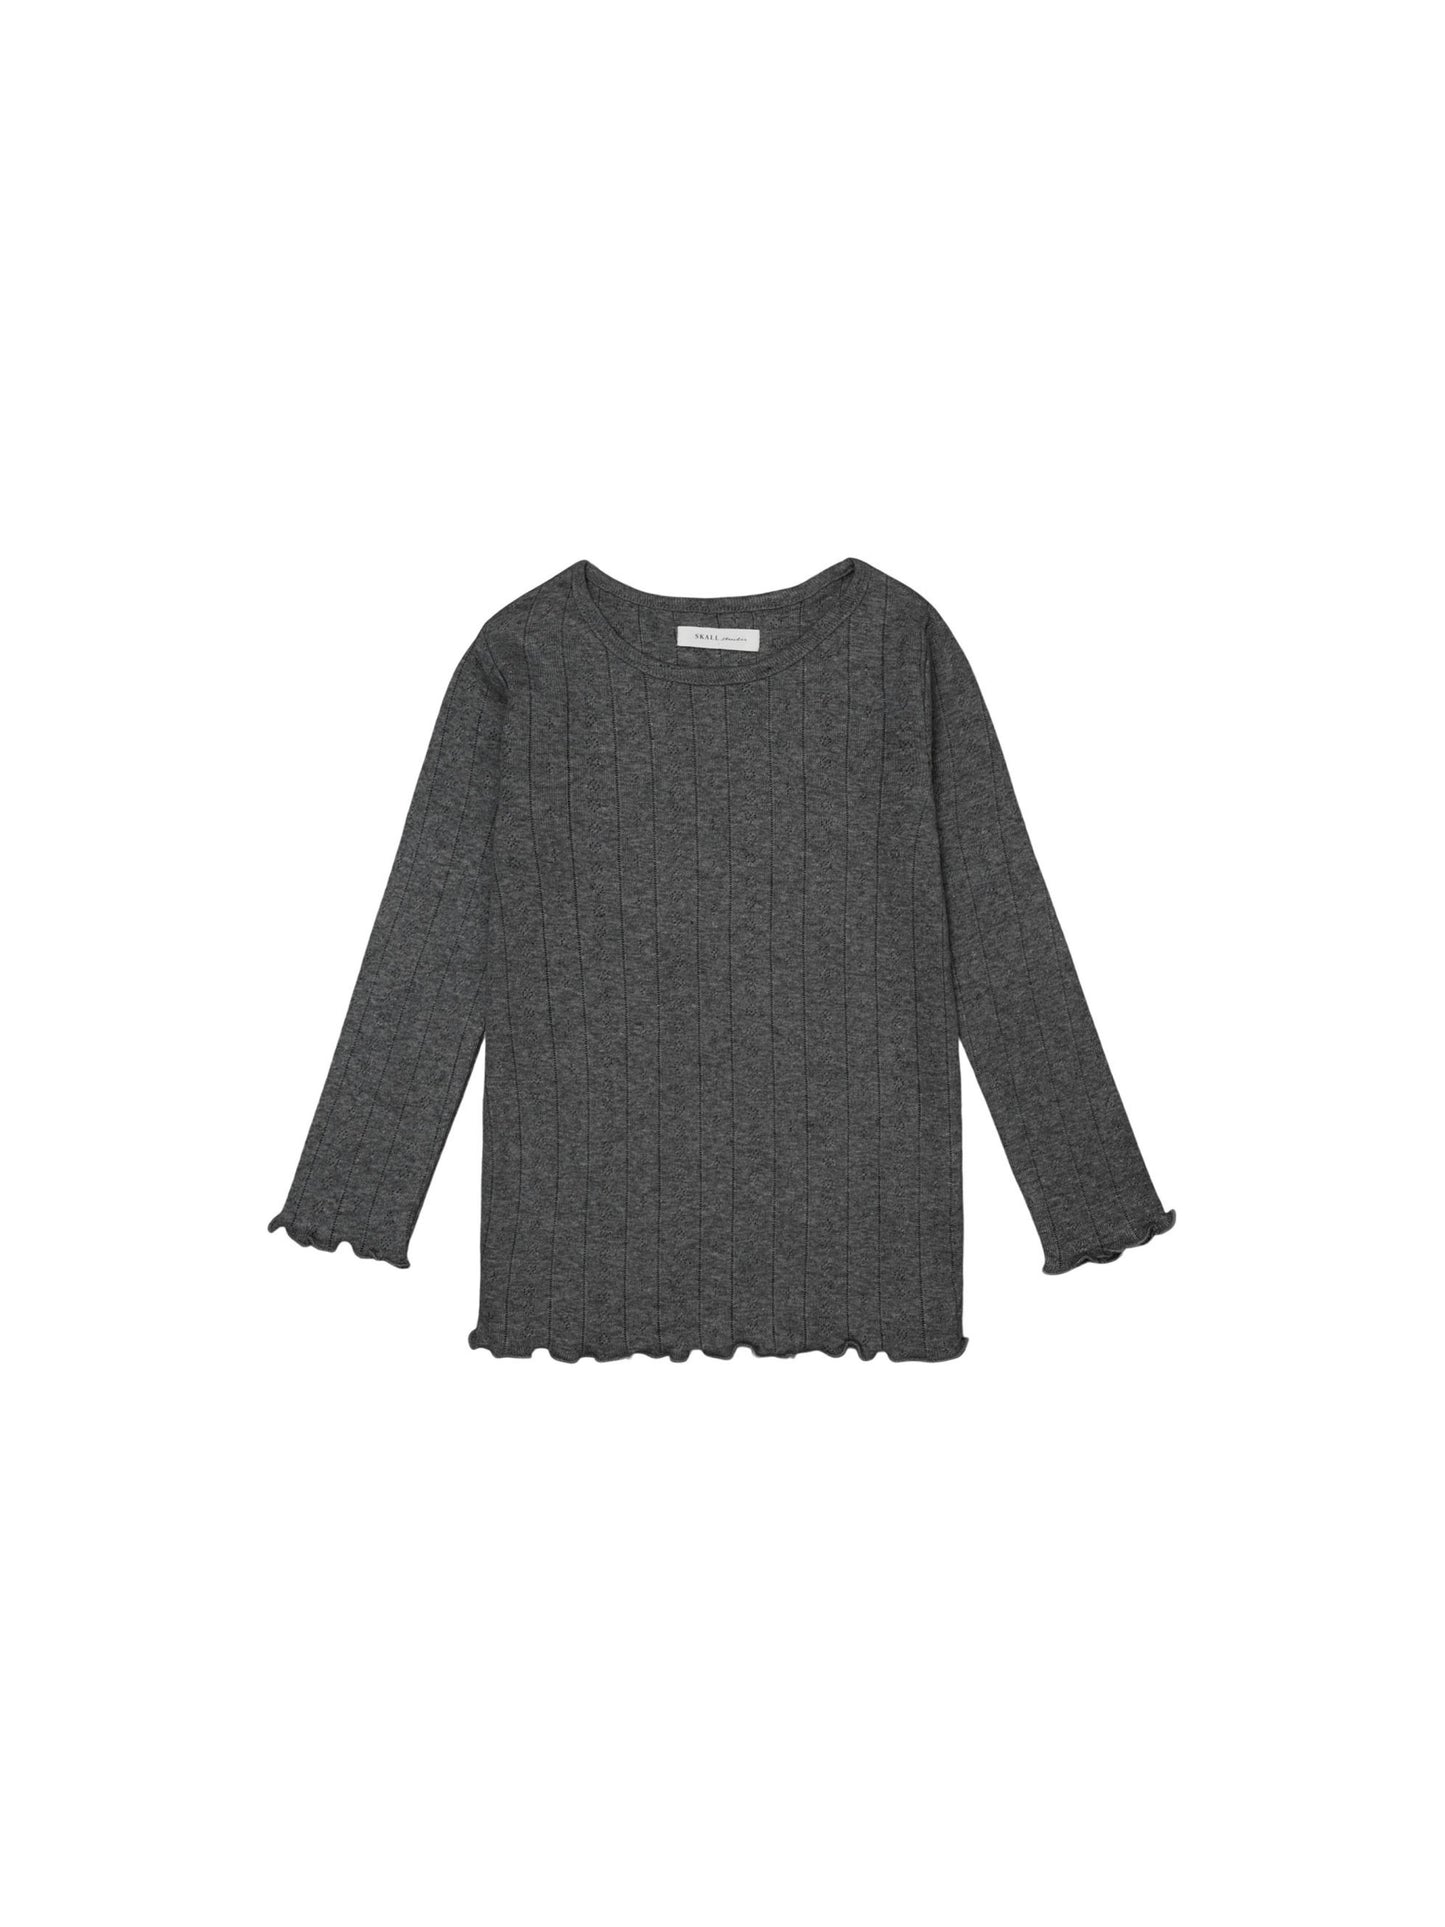 Skall Musling - Edie blouse Musling - Dark grey melange